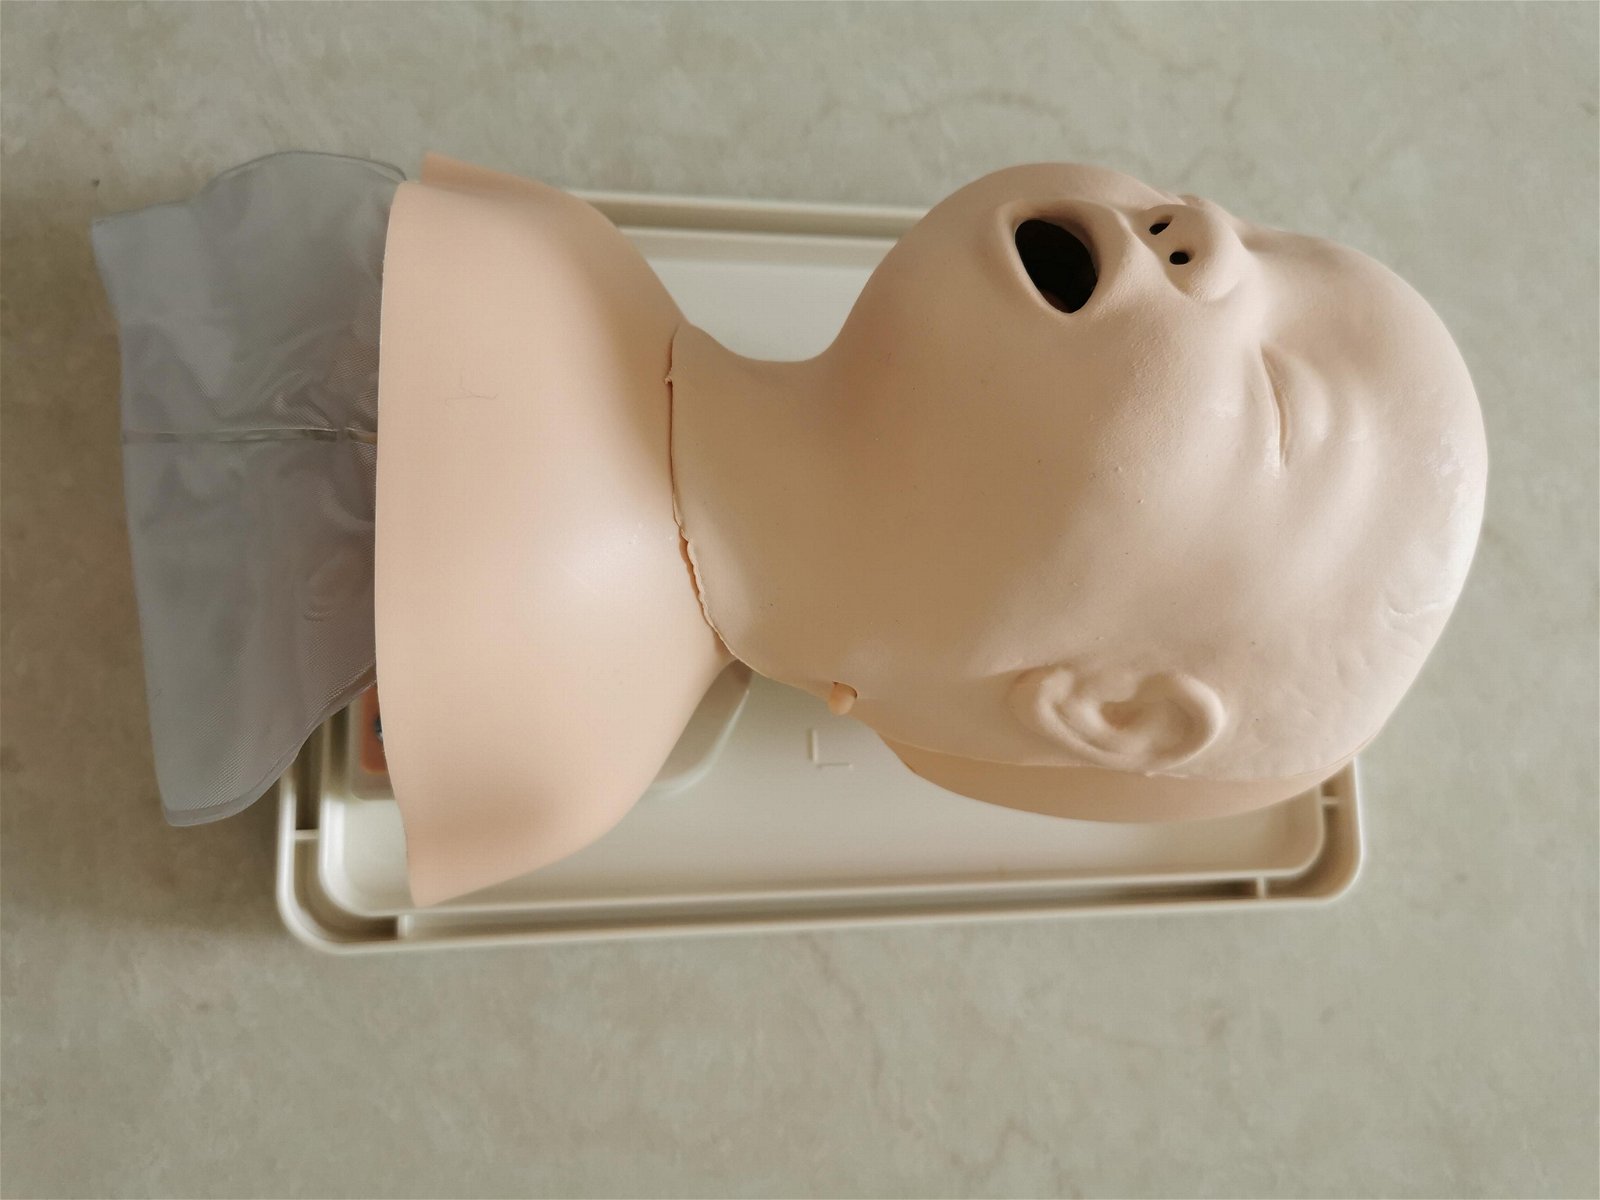 挪度婴儿气管插管训练模型250-00250，小儿气道管理模型